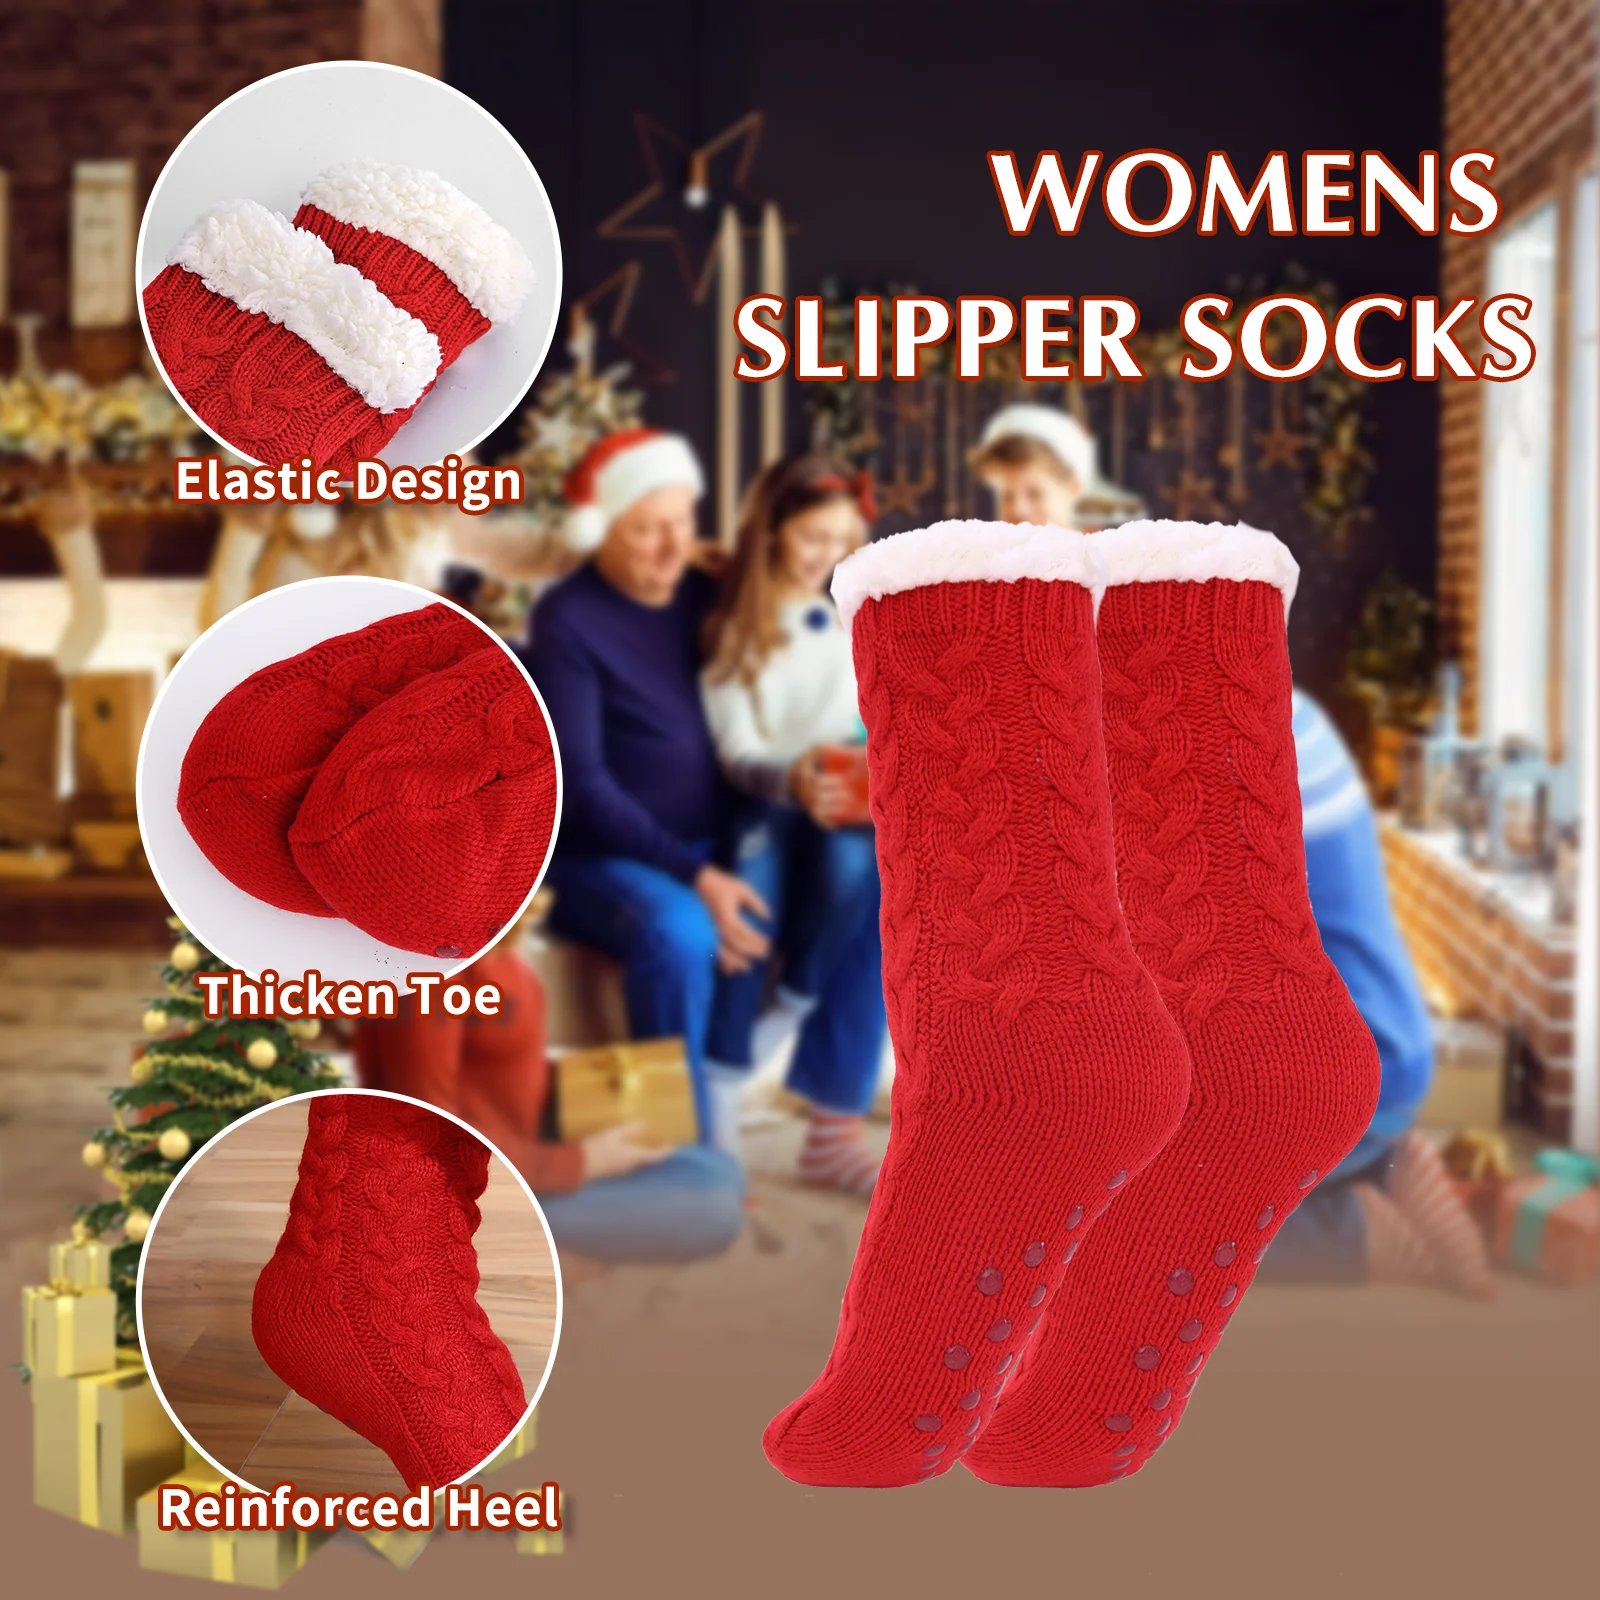 Slipper Socks for Women Non Slip Floor Socks Fluffy Cozy Fleece Lined Winter  Socks Thermal Sleeping Bed Socks with Grippers